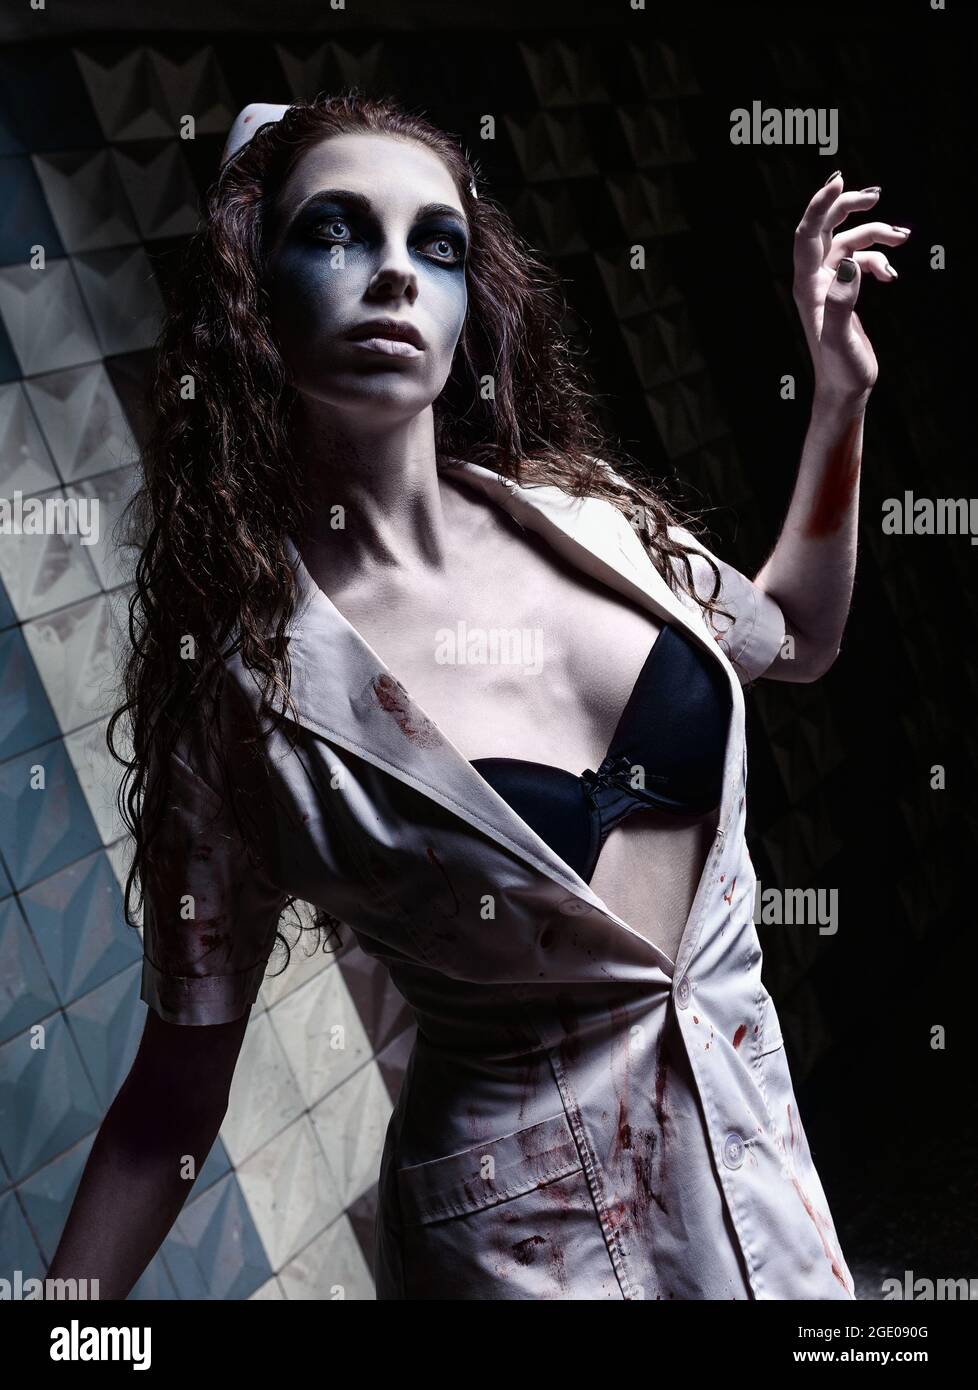 Horrorfoto: Die komische, düstere Krankenschwester (Arzt) in blutiger Uniform. Zombie-Mädchen (lebend tot) Stockfoto